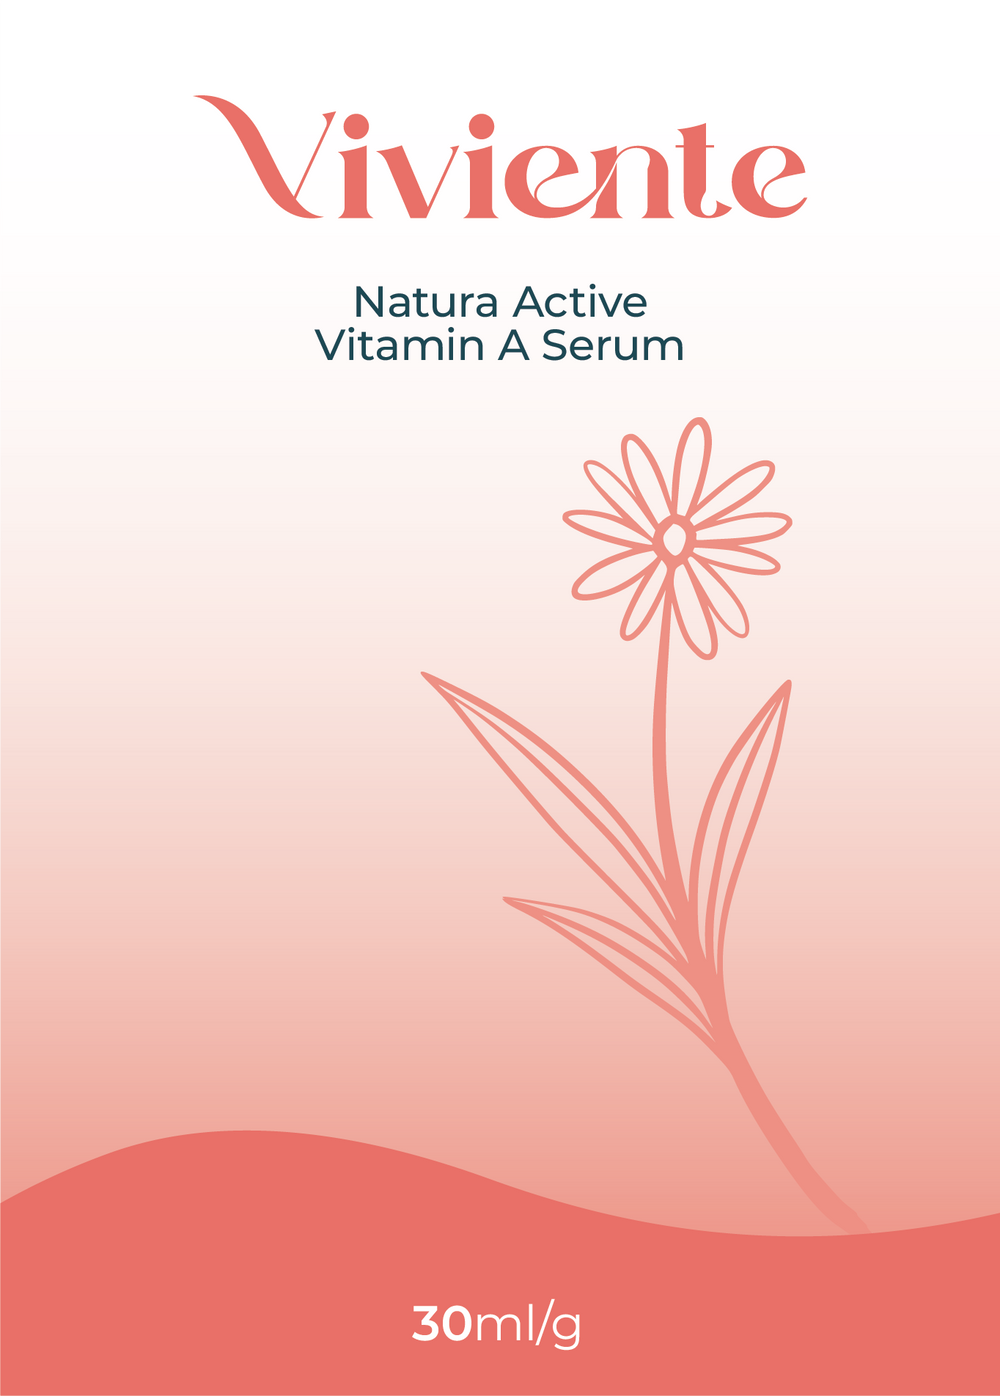 Viviente Natura Active Vitamin A Serum 30ml | Confetti Living